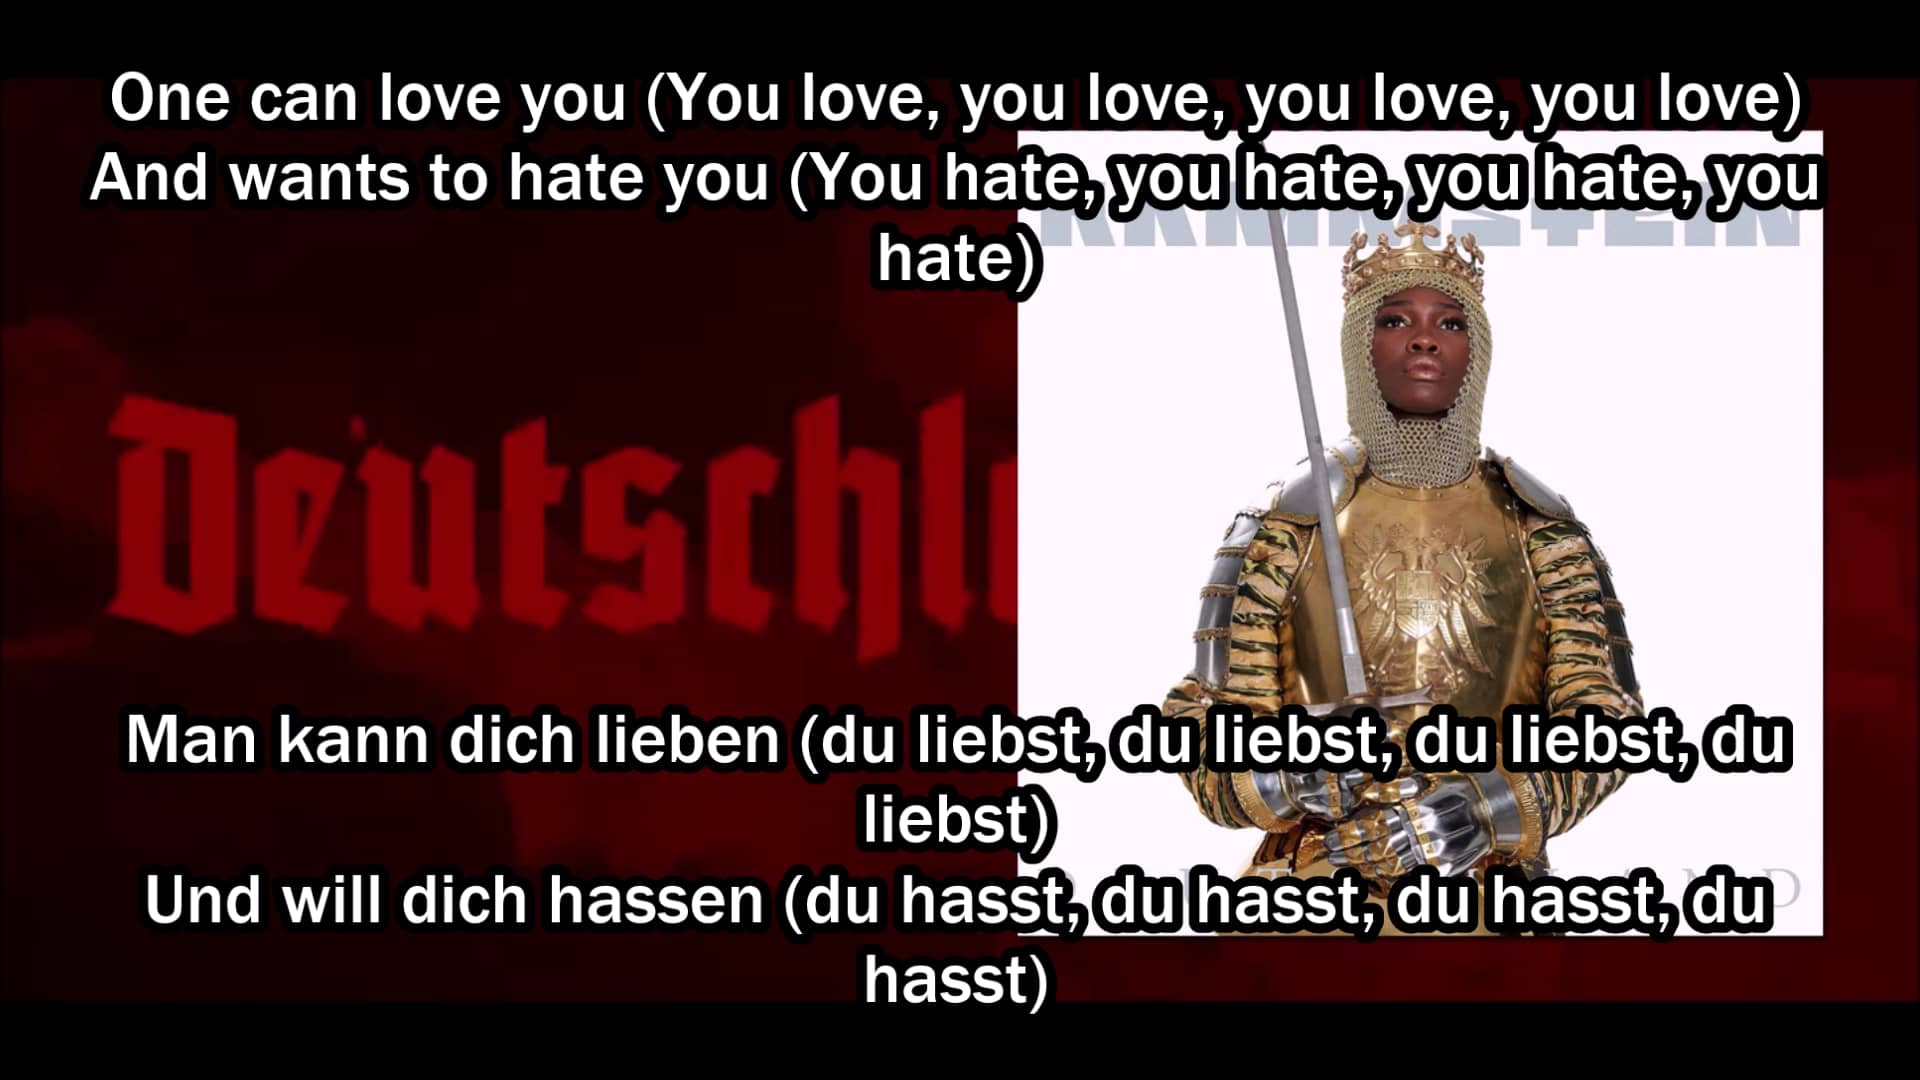 Rammstein Deutschland Lyrics English Liedtext Deutsch On Vimeo